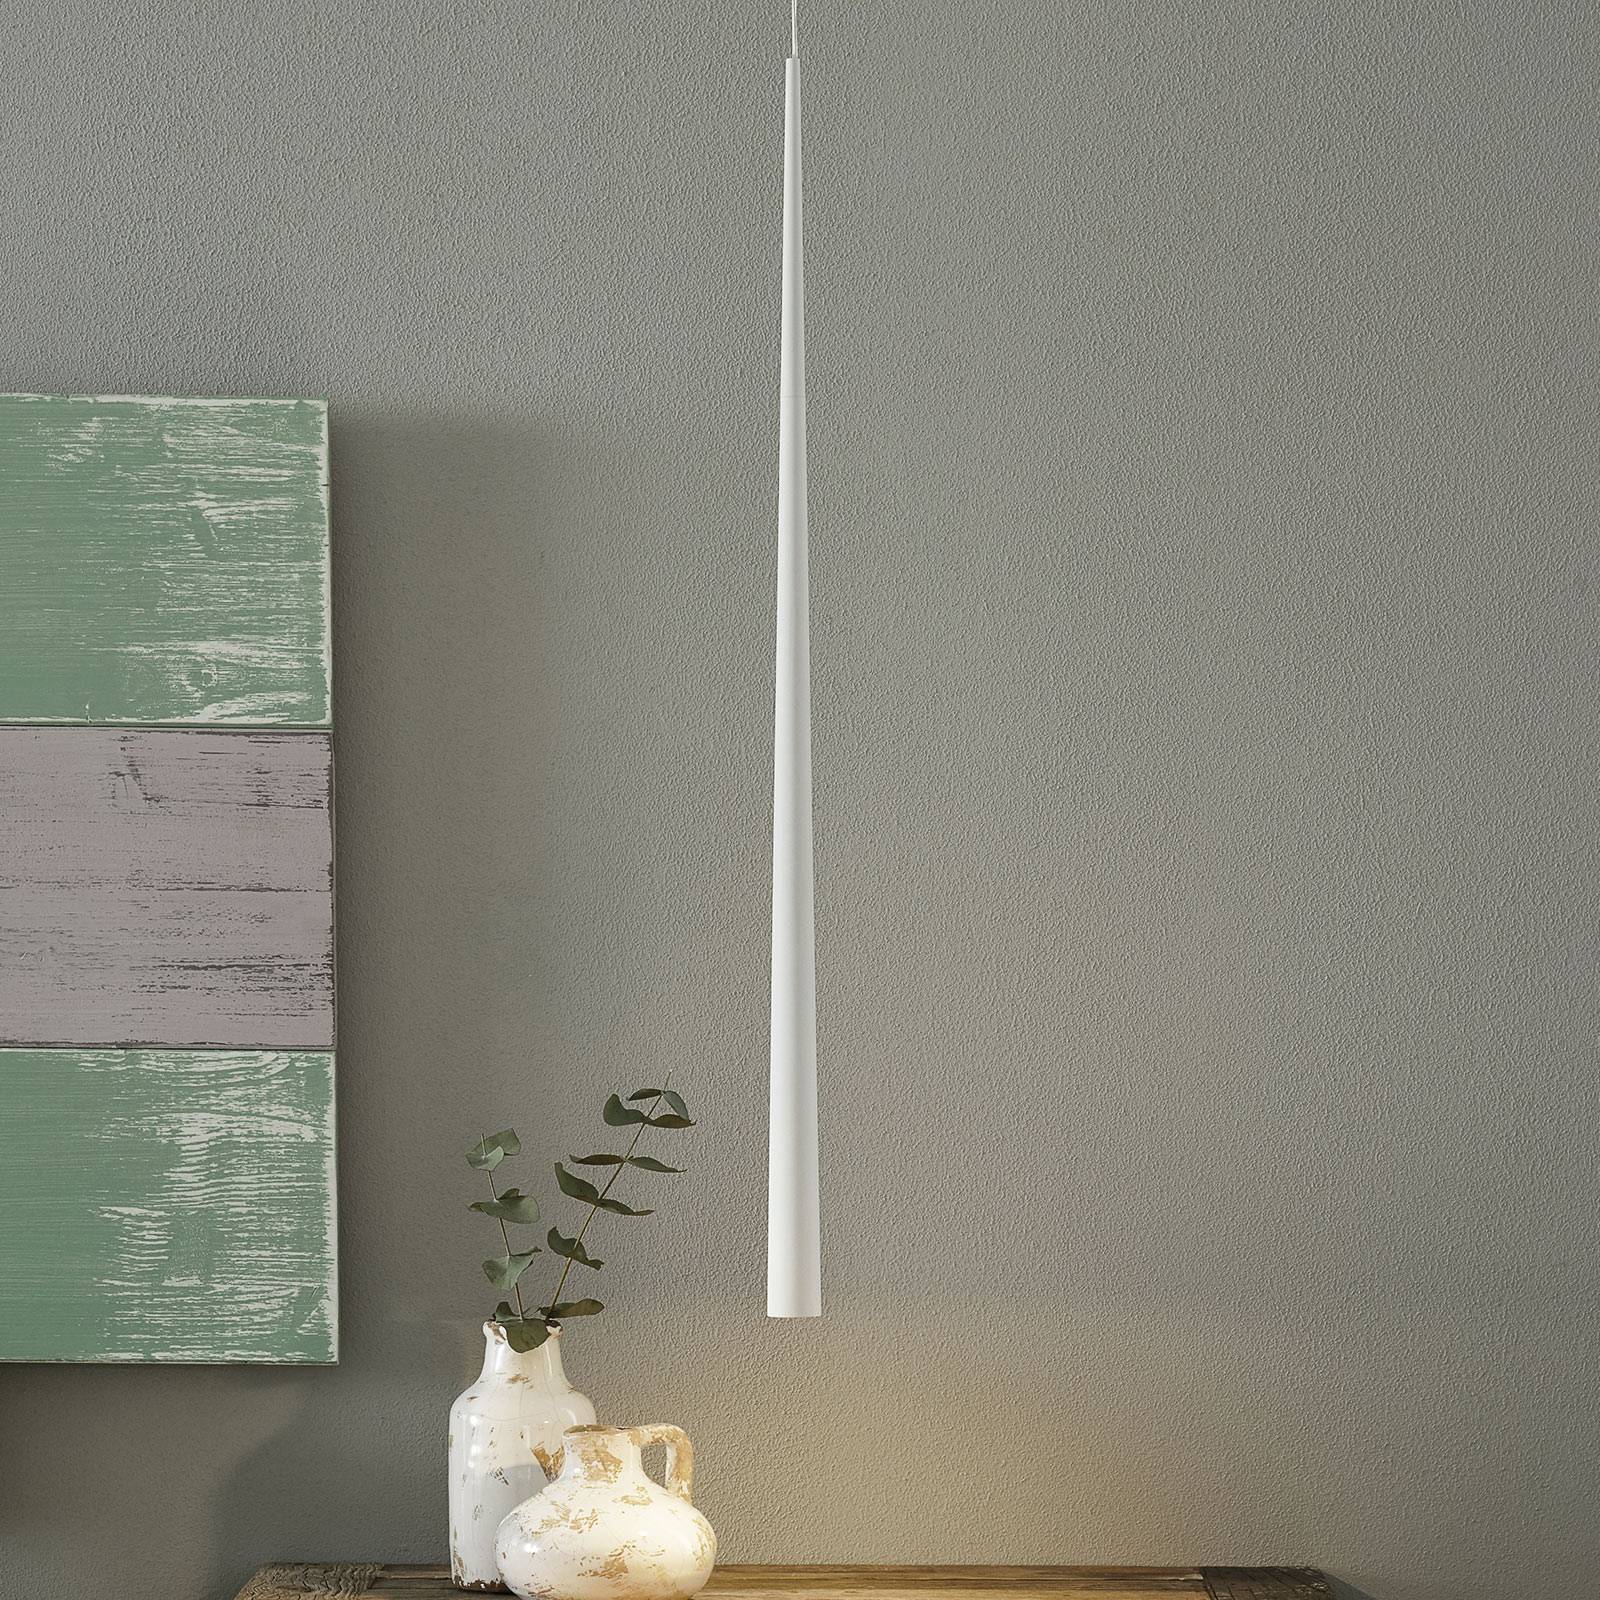 Bendis - suspension LED élancée en blanc